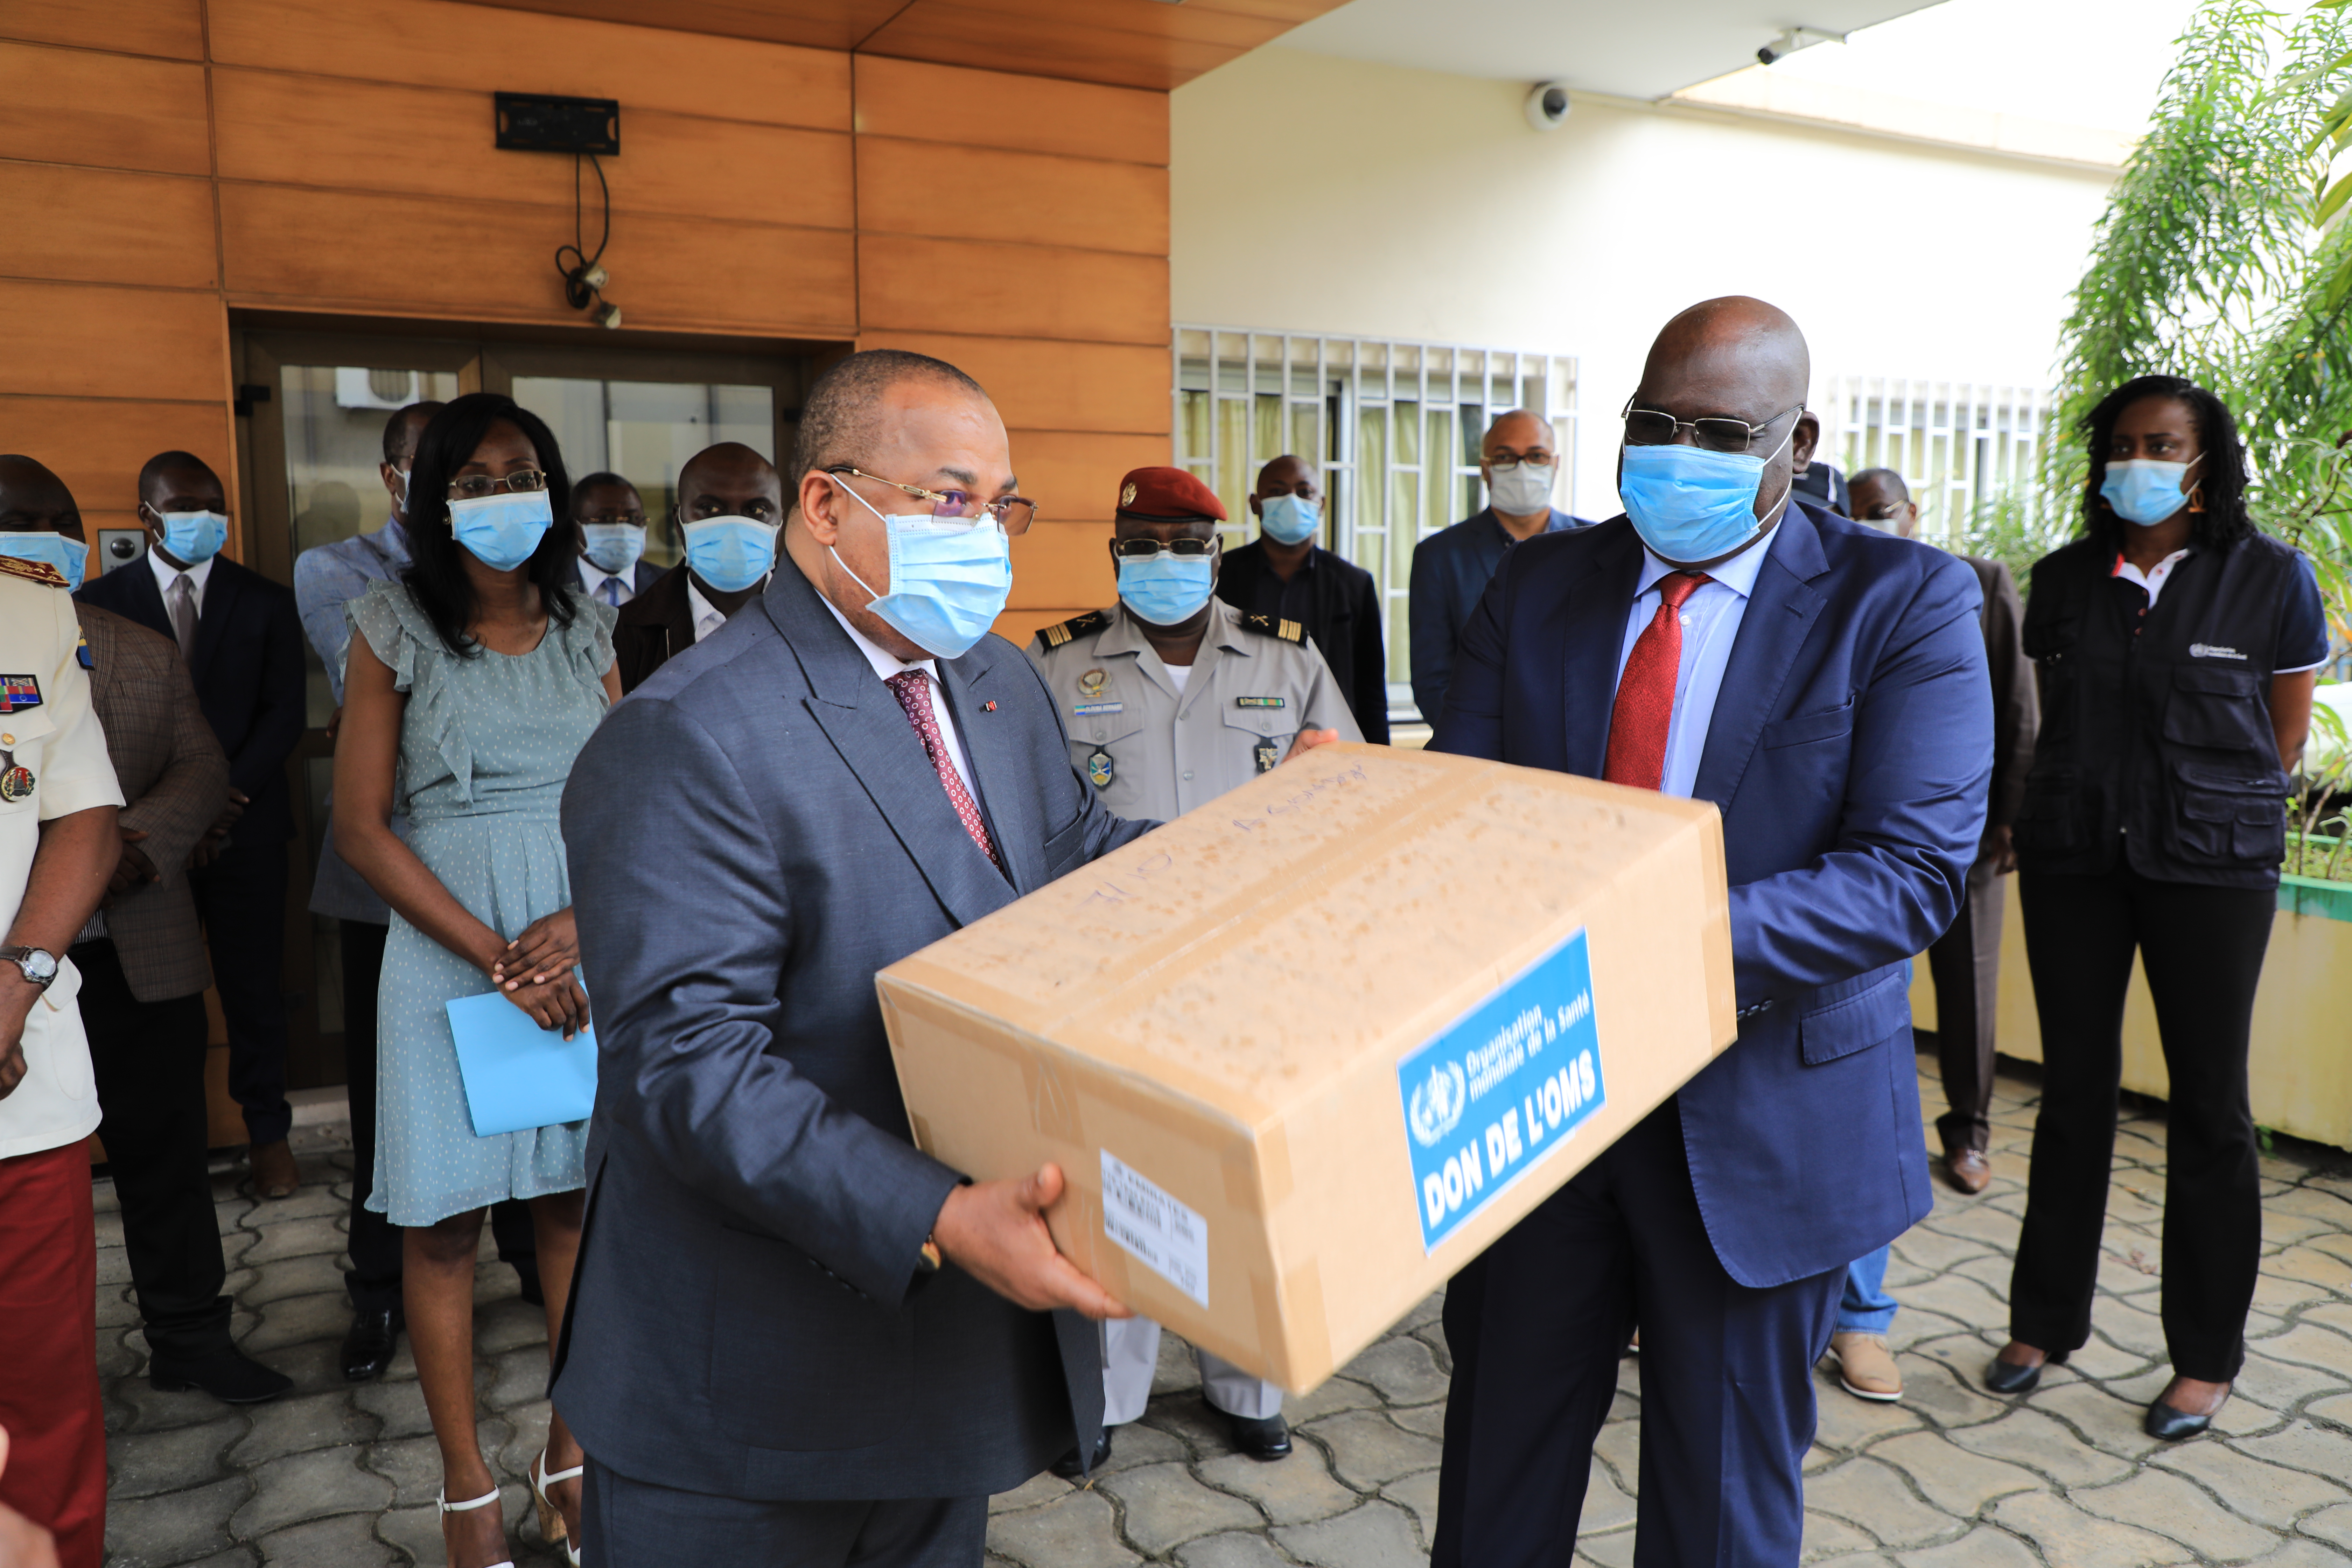 La réponse du système des Nations unies au Gabon face à la pandemie du Covid-19